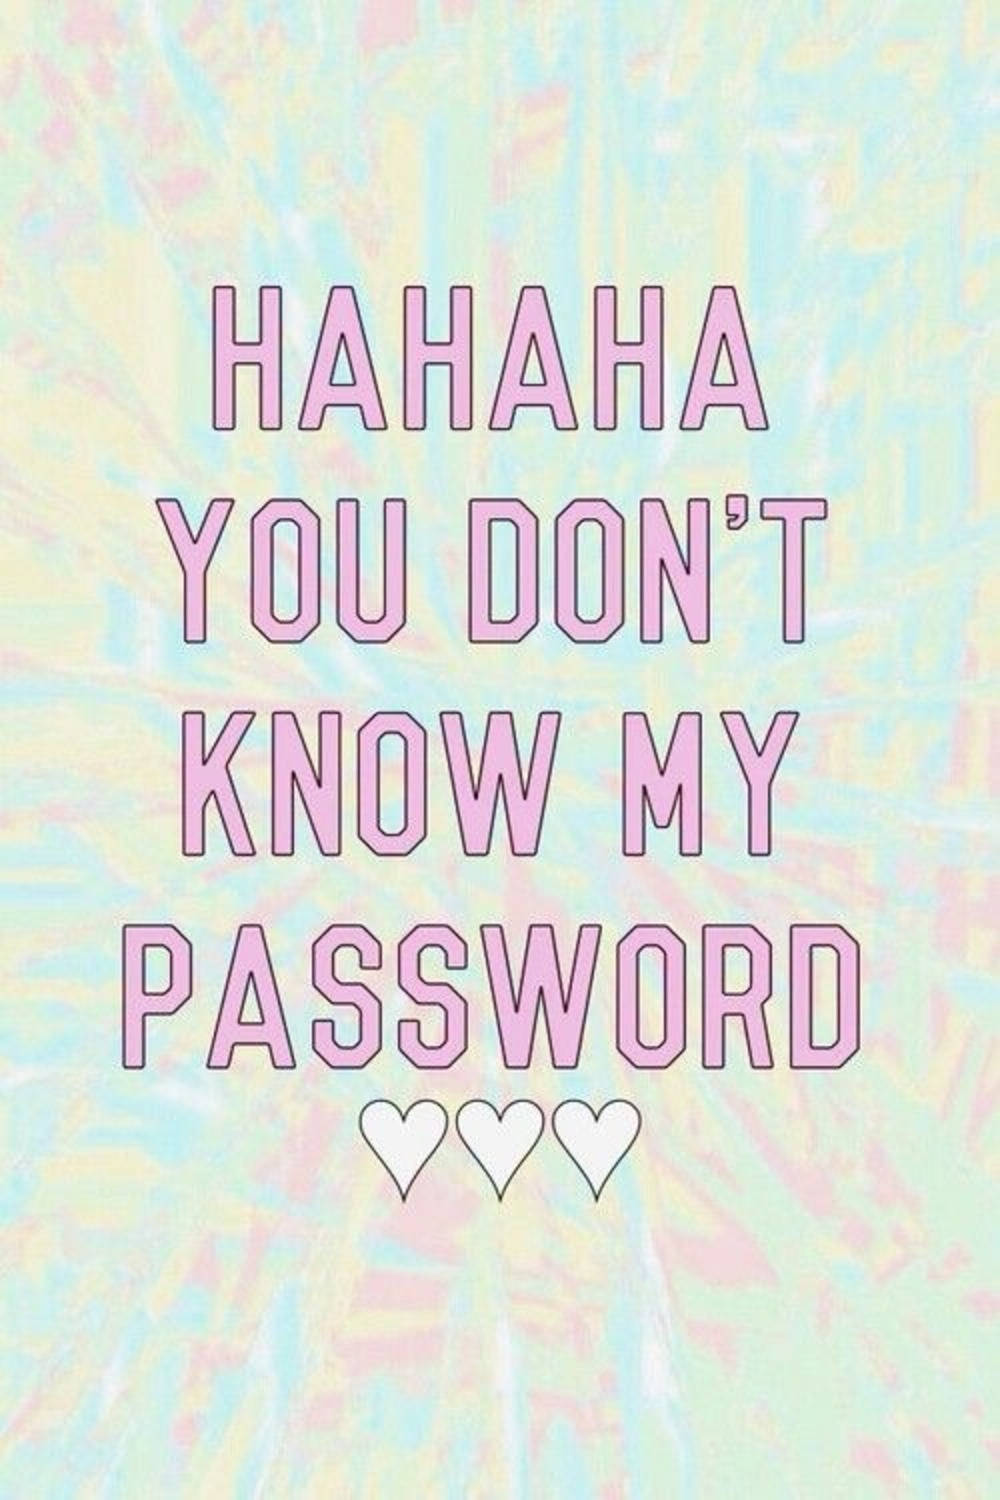 Hahaha,du Kennst Mein Passwort Nicht. Wallpaper